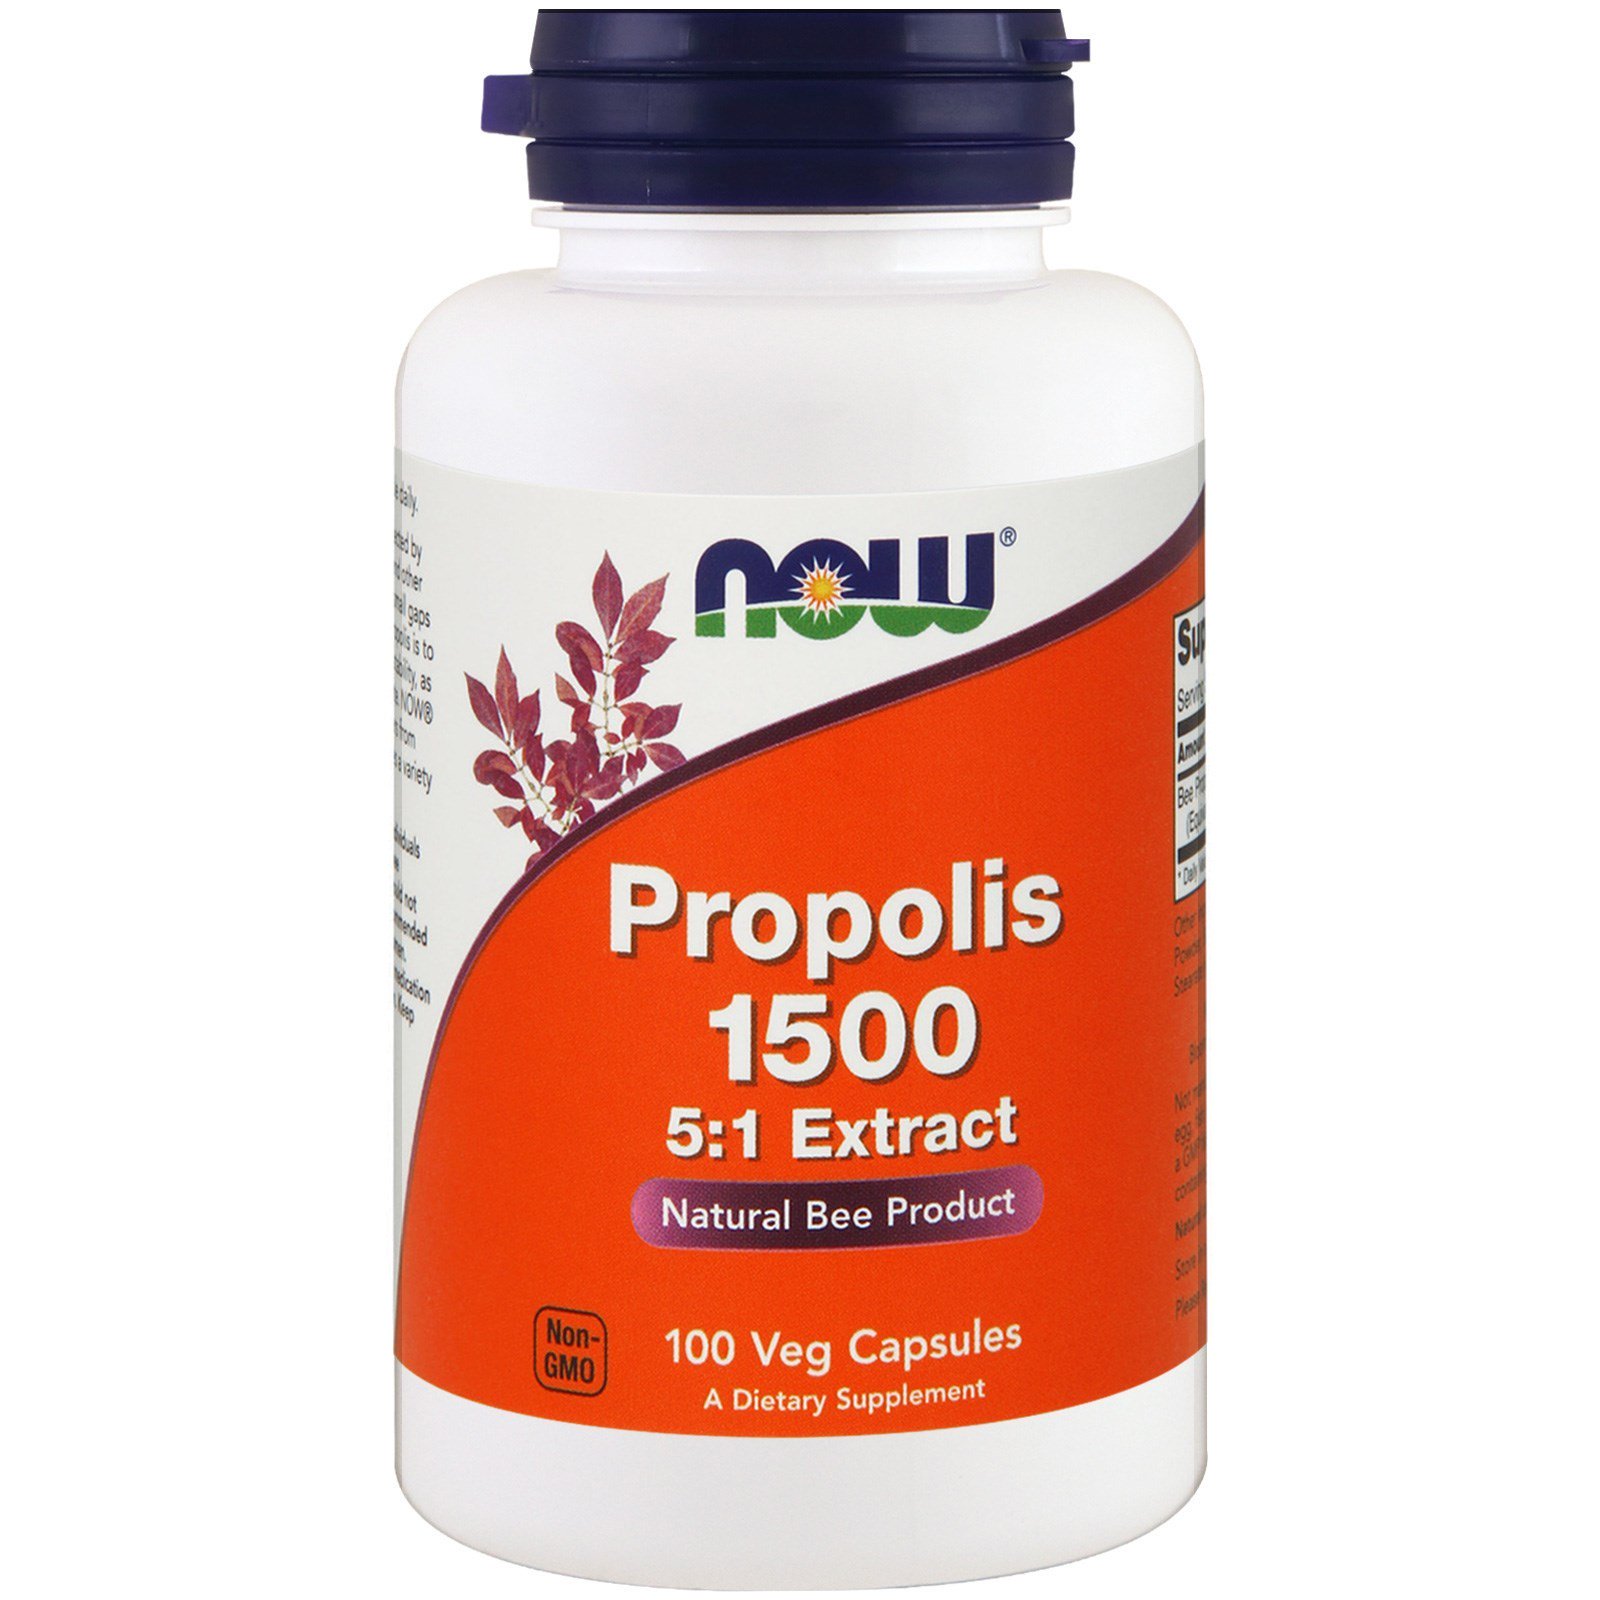 Propolis 1500, Прополис Экстракт 5:1, 300 мг - 100 вегетарианских капсул